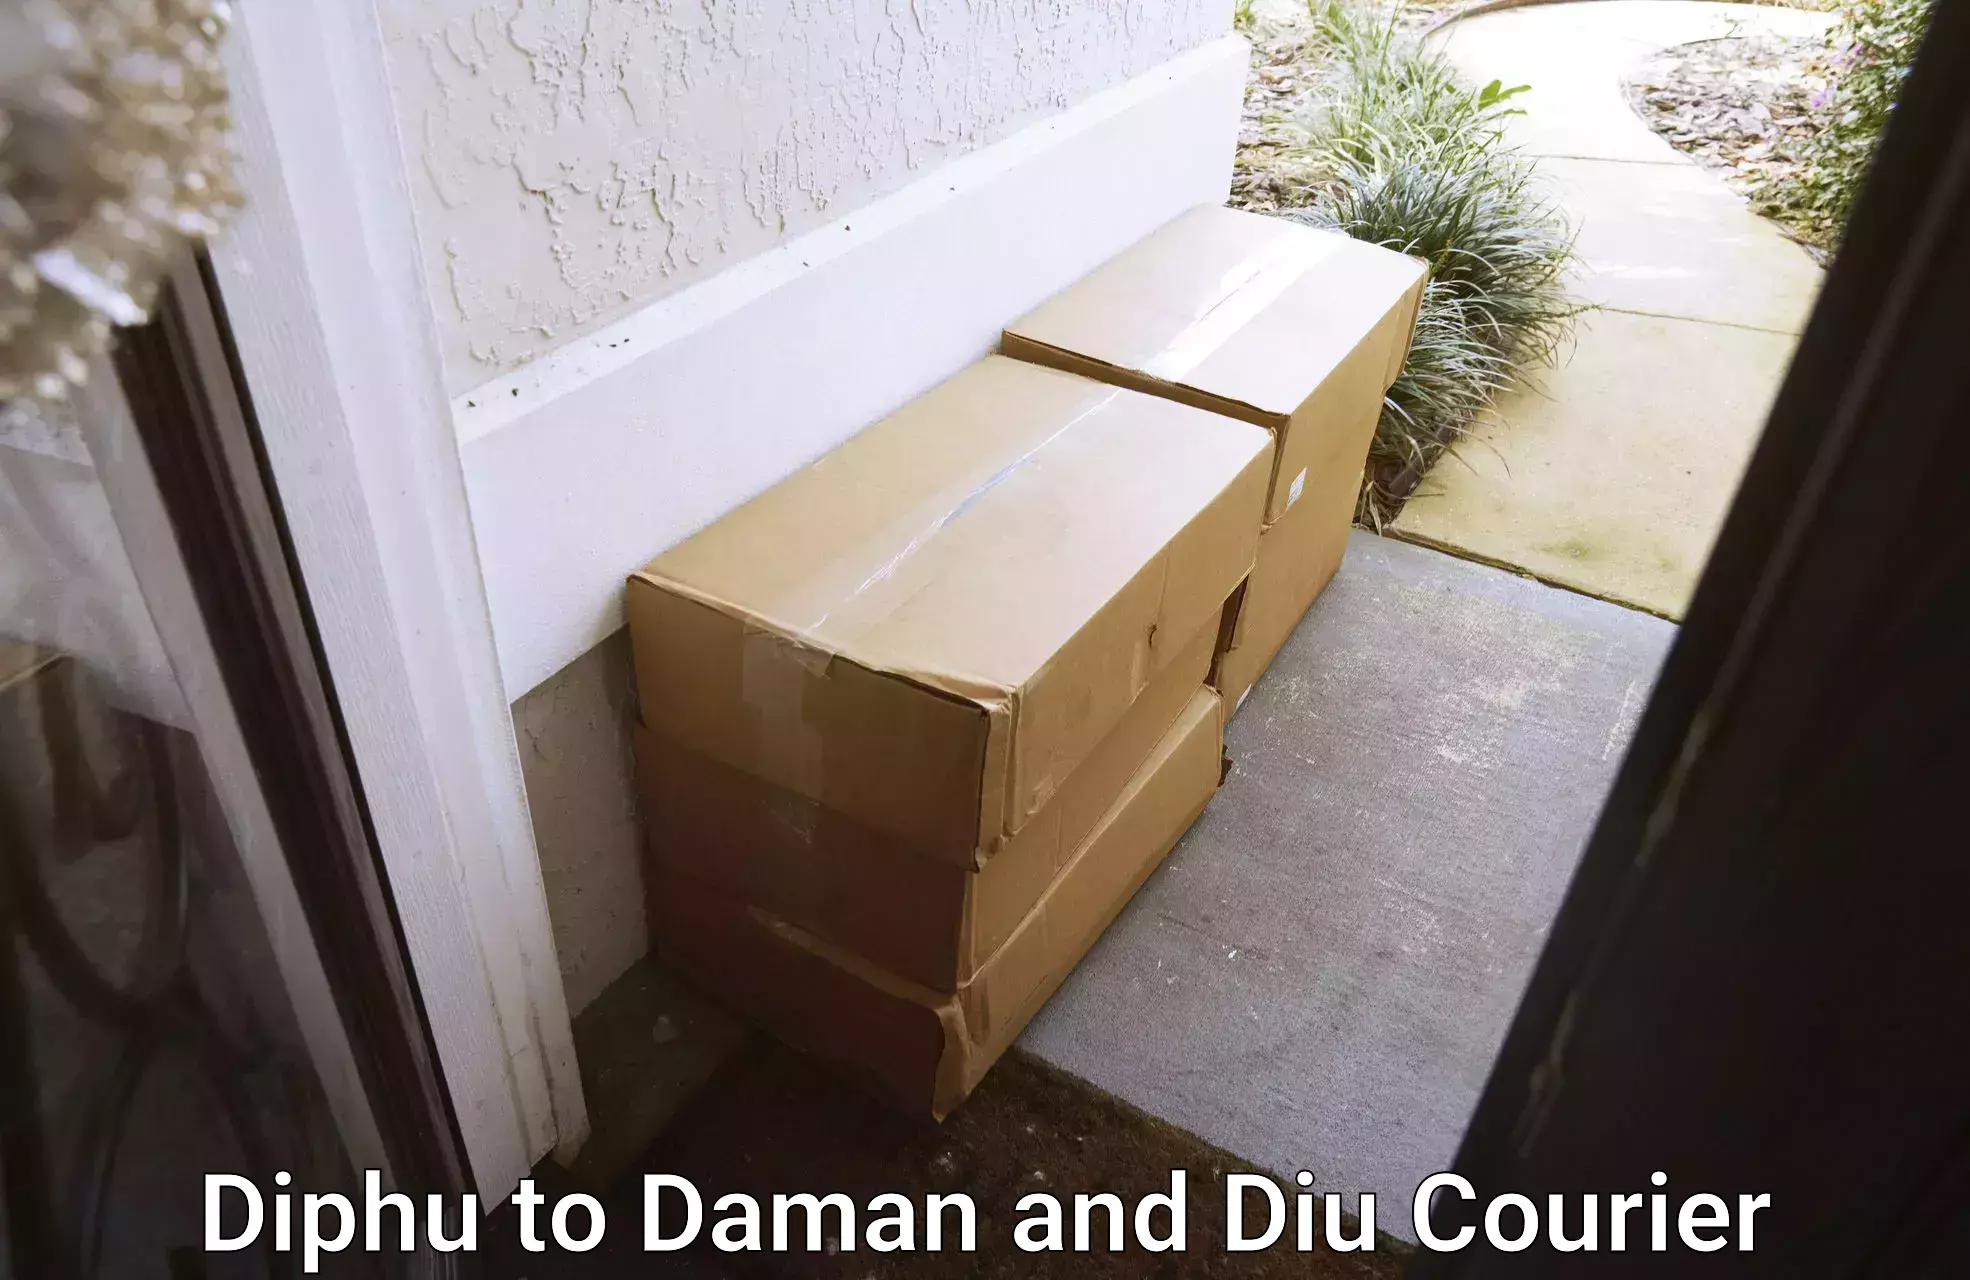 High-capacity parcel service Diphu to Daman and Diu